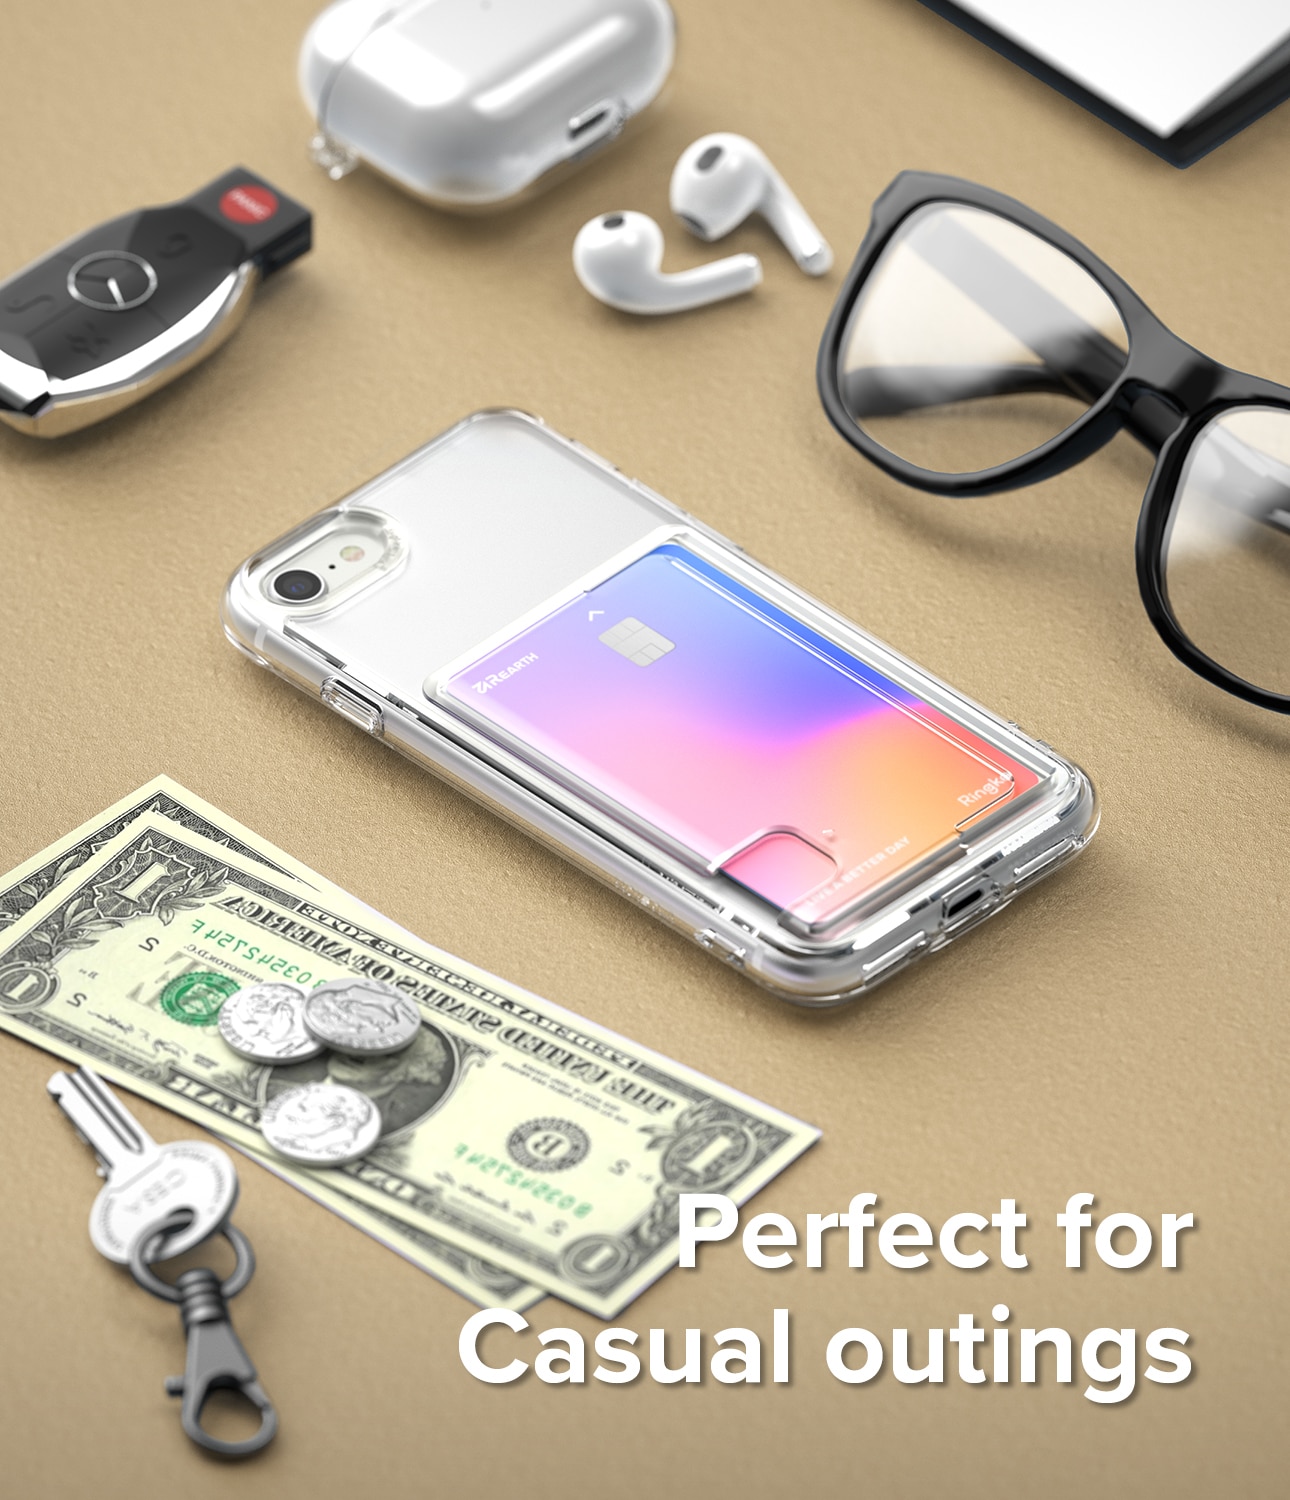 Coque Fusion Card iPhone 8 Transparent